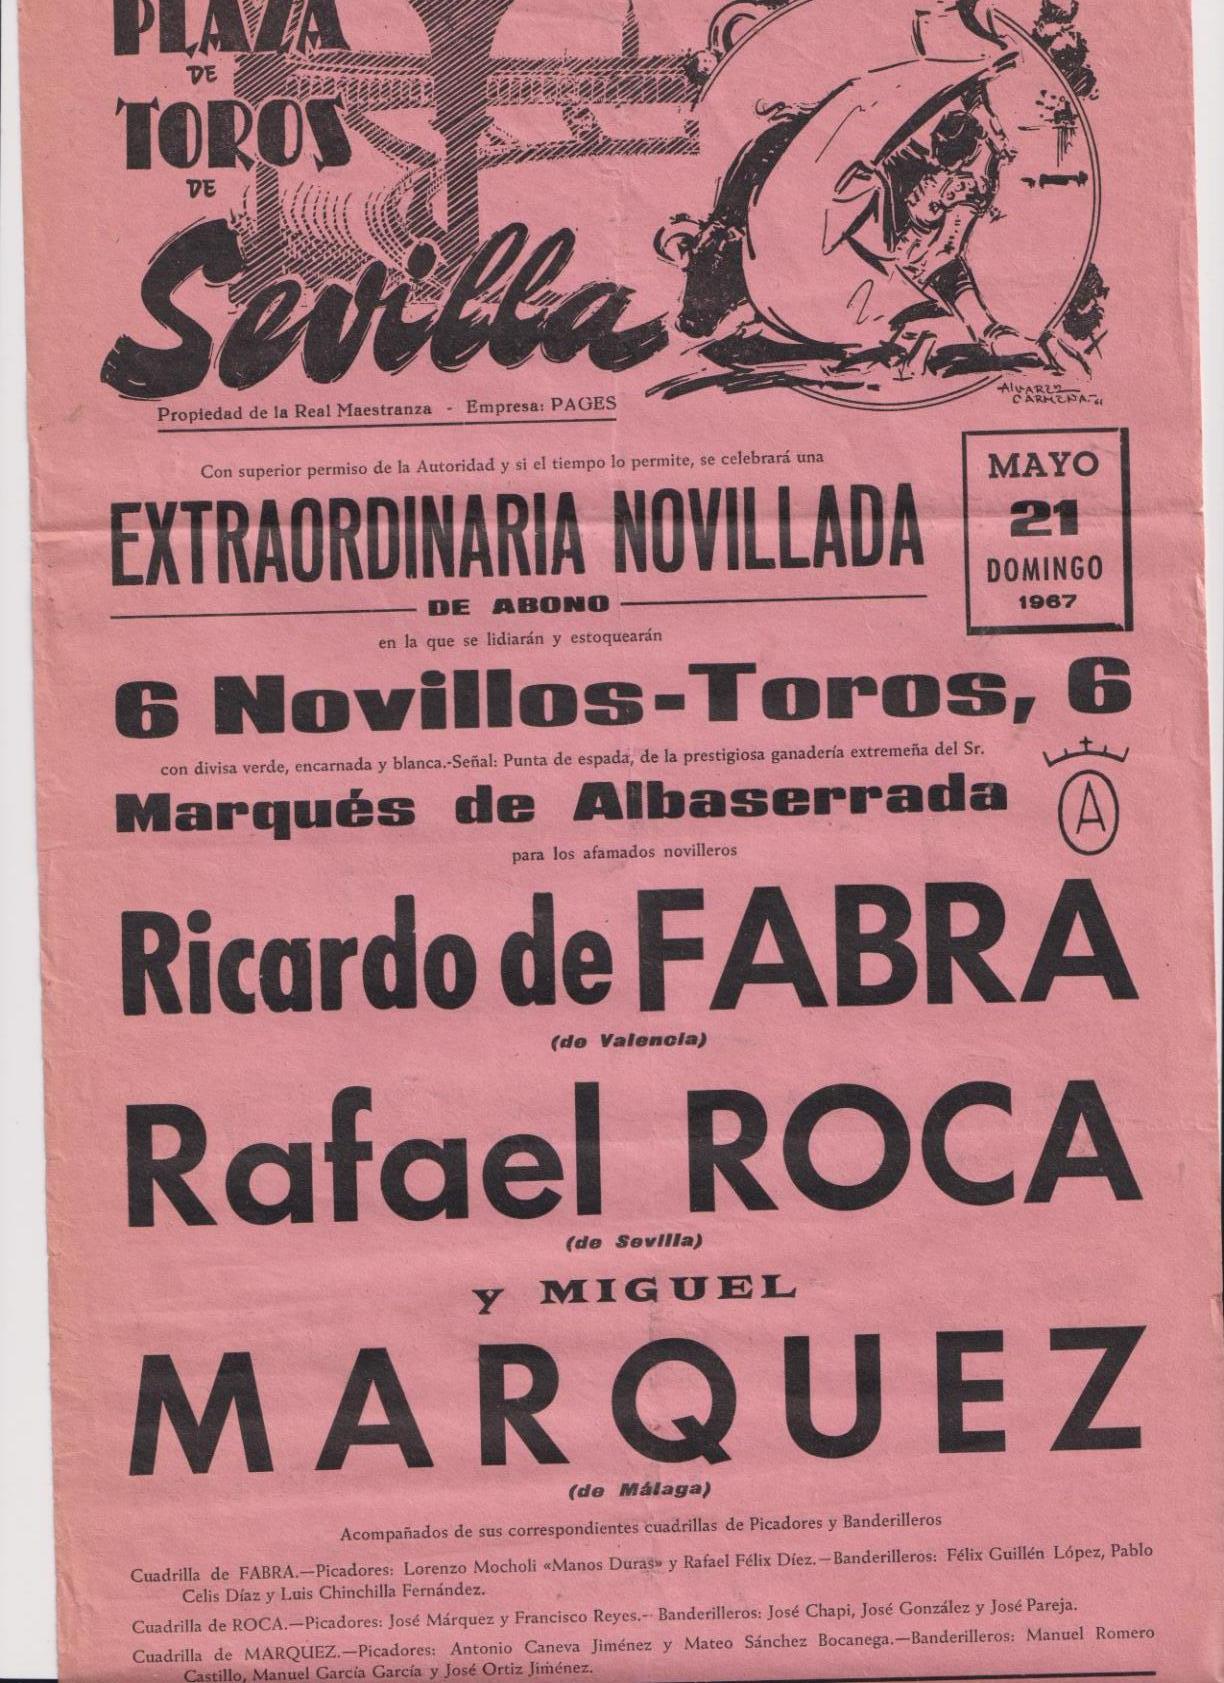 Cartel (45x21) Plaza de Toros de Sevilla 21 de Mayo de 1967. Extraordinaria Novillada